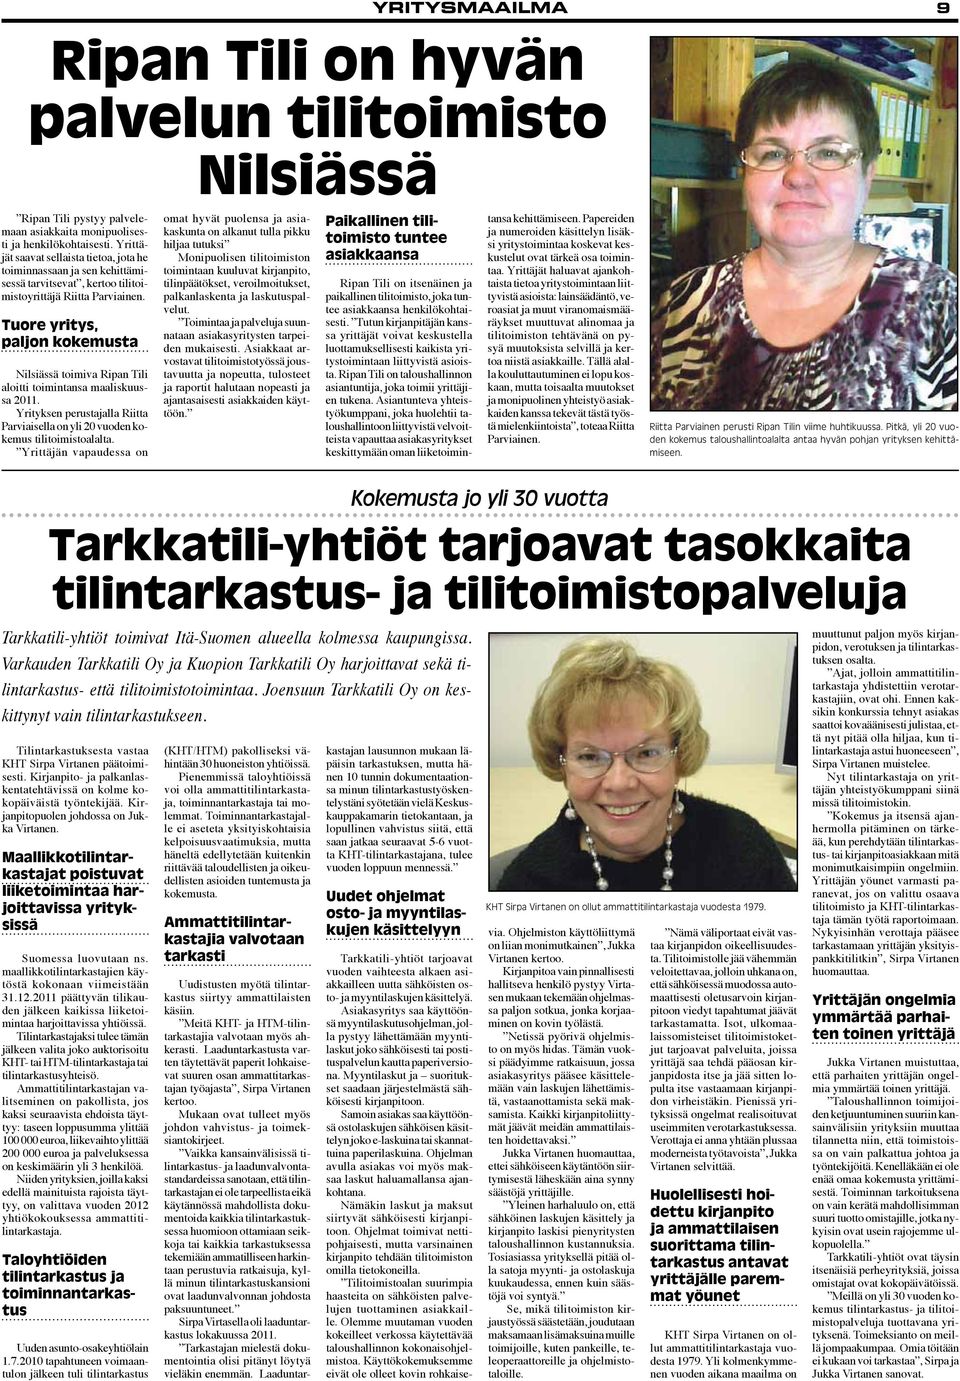 Tuore yritys, paljon kokemusta Nilsiässä toimiva Ripan Tili aloitti toimintansa maaliskuussa 2011. Yrityksen perustajalla Riitta Parviaisella on yli 20 vuoden kokemus tilitoimistoalalta.